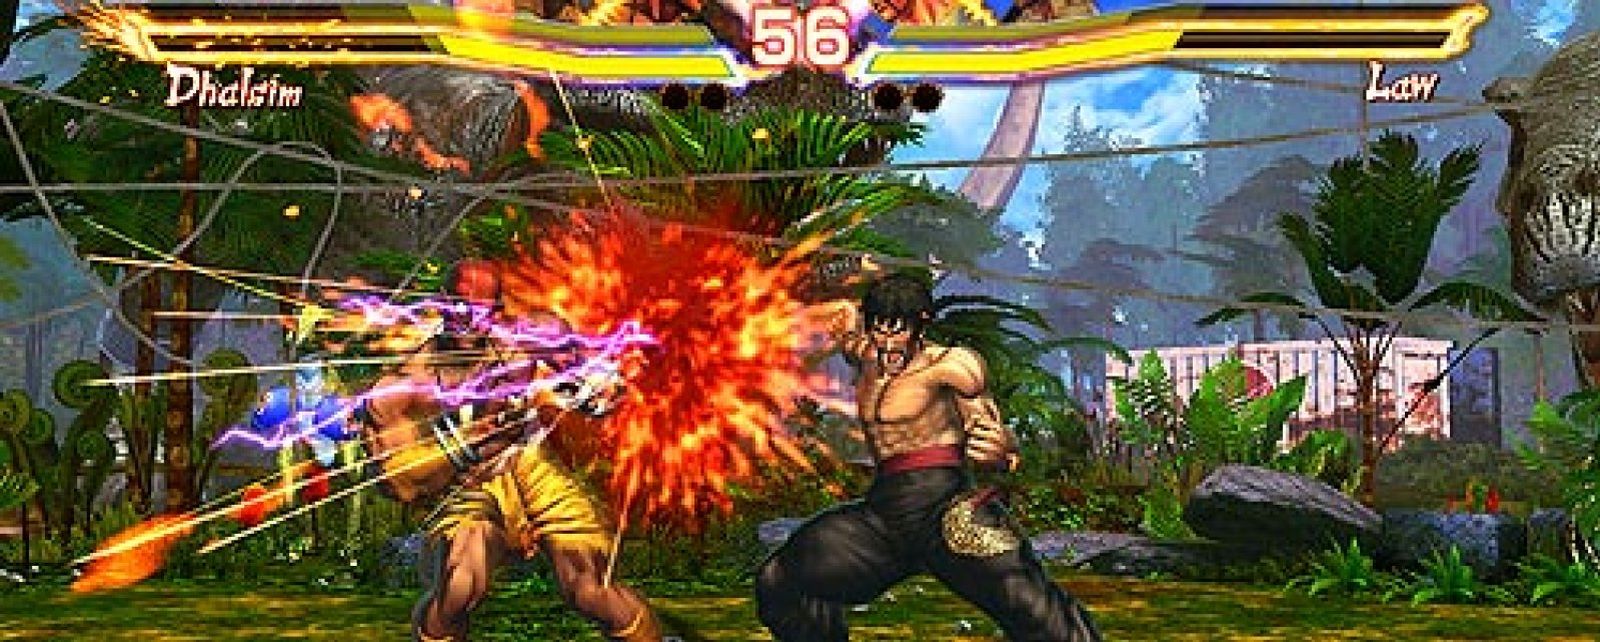 Foto: Street Fighter X Tekken, el juego definitivo de lucha